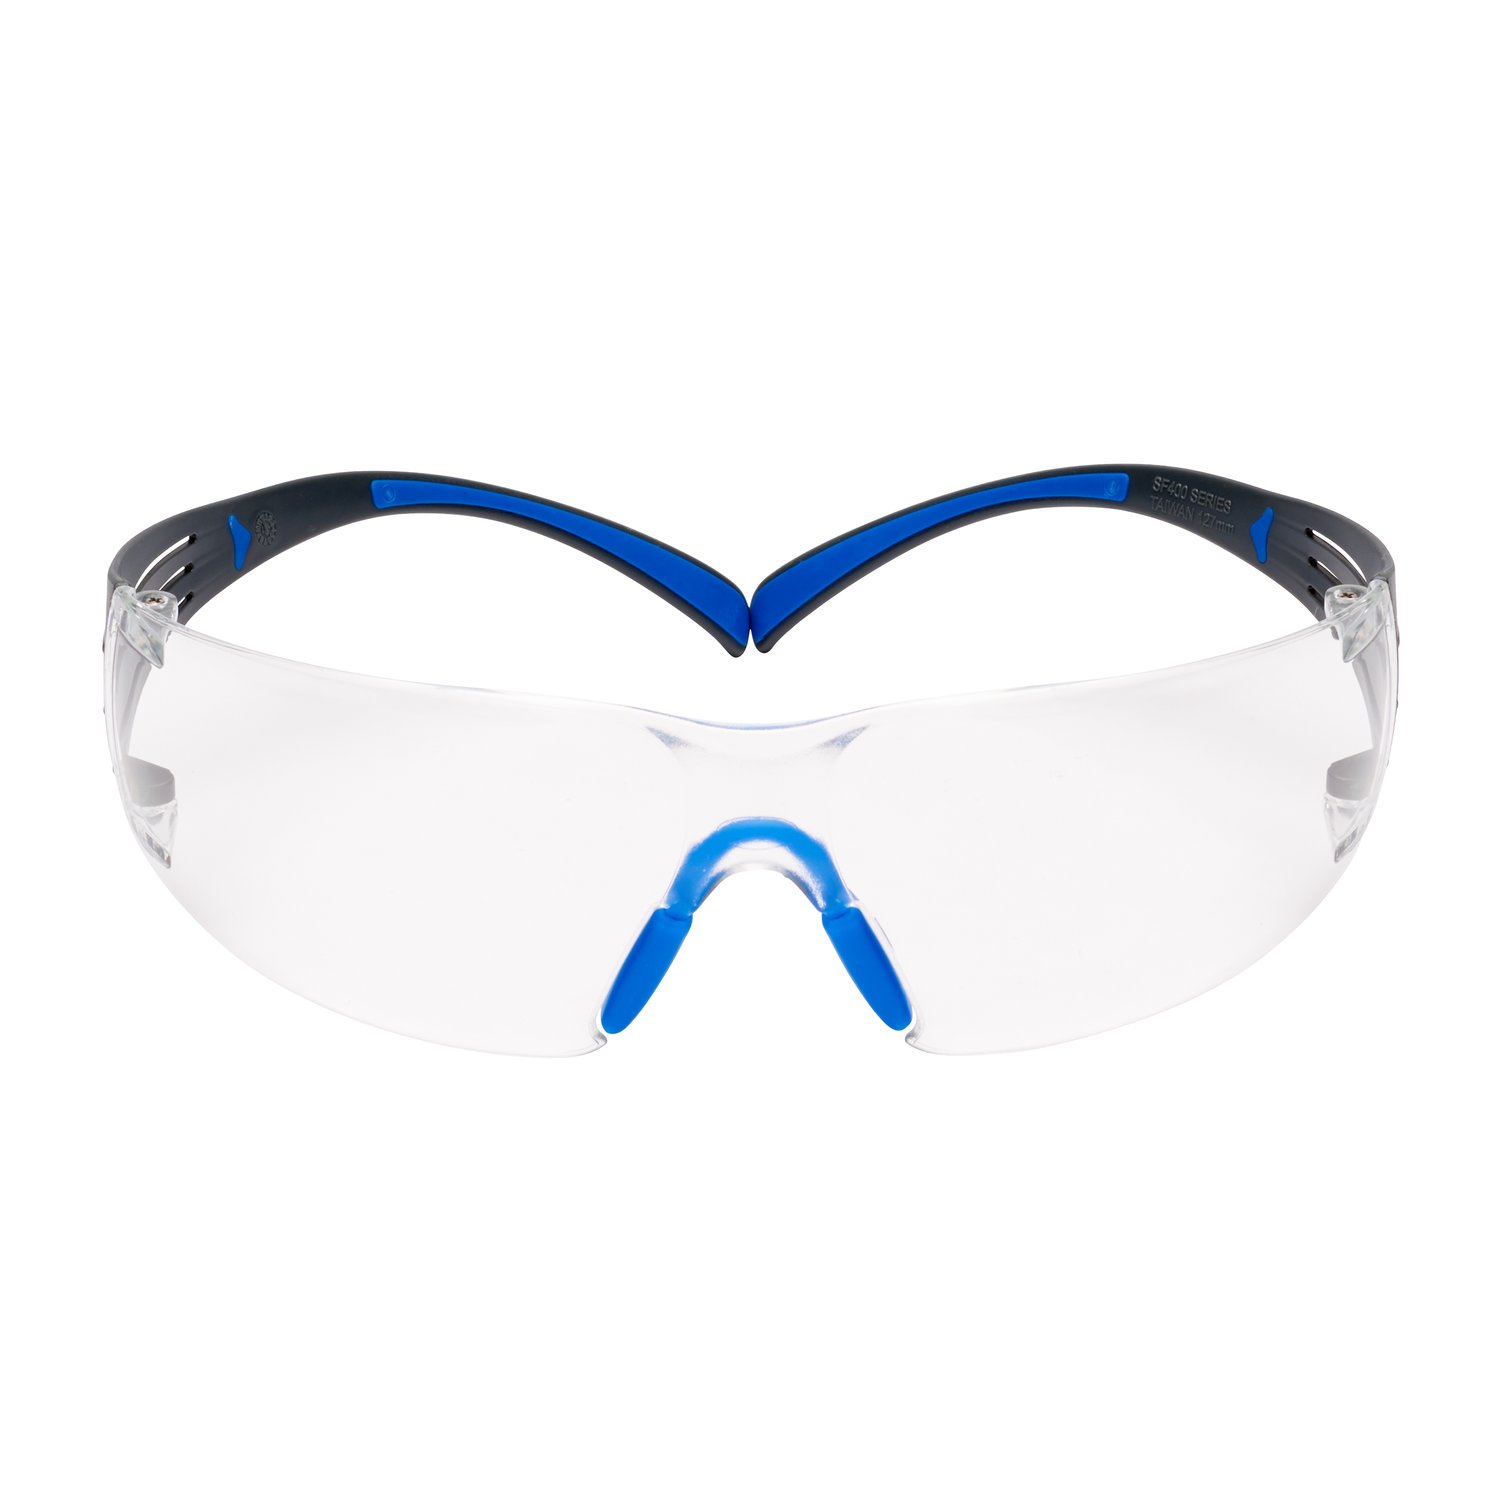 7100150838 - 3M SecureFit Safety Glasses SF401SGAF-BLU, Blue/Gray, Clear
Scotchgard Anti-fog Lens, 20 EA/Case